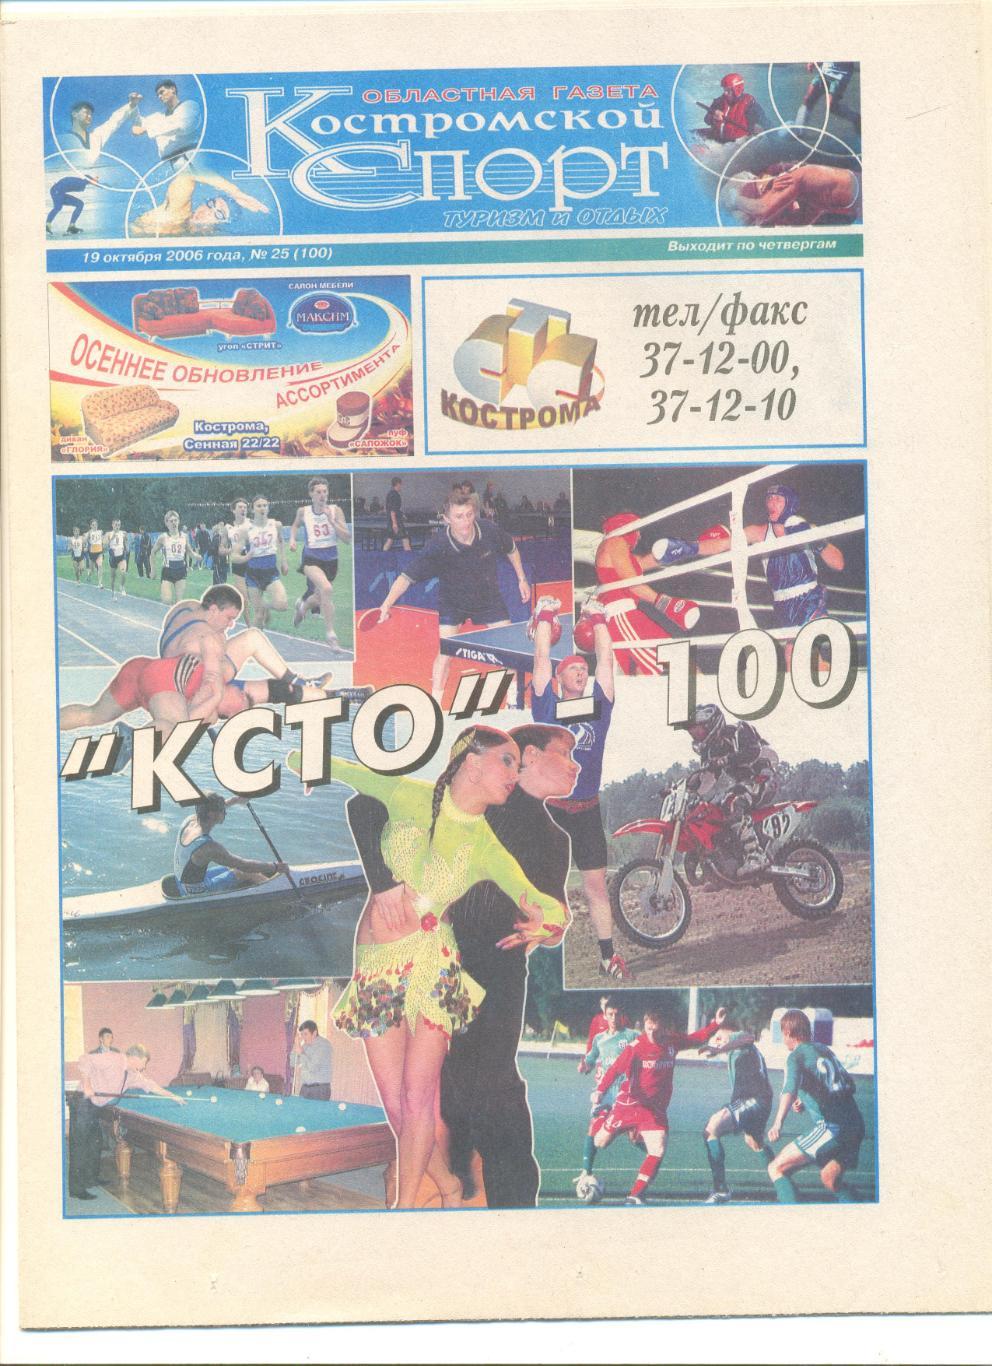 Костромской спорт 19.10.2006 г. Отчет Нара-Десна Наро-Фоминск - Спартак Кострома